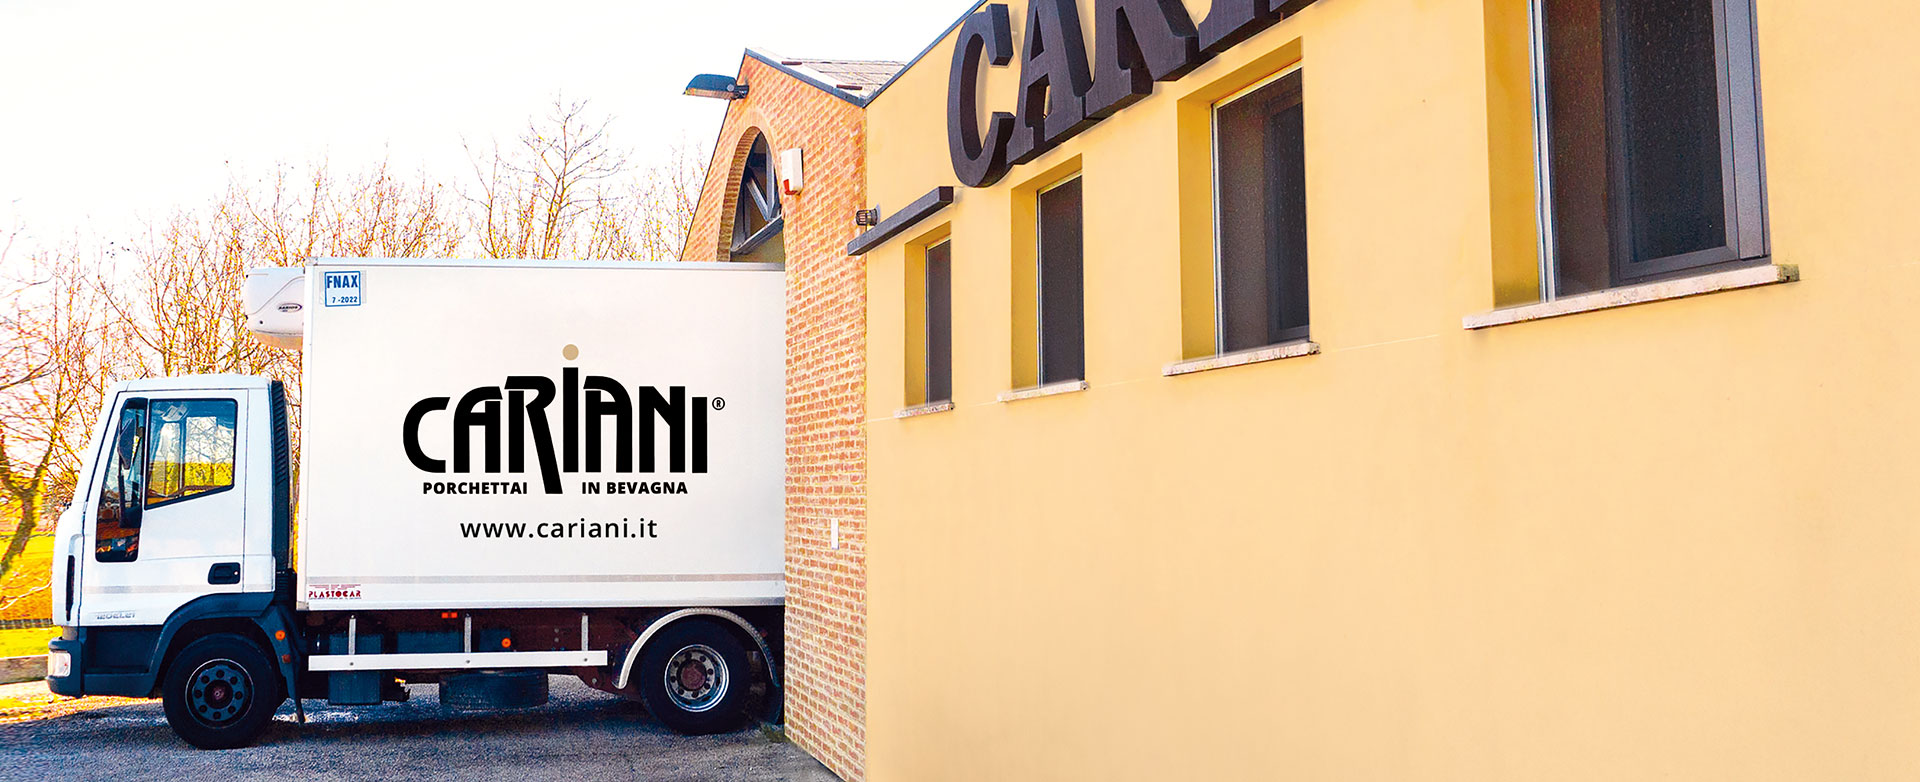 Cariani, azienda storica di produzione di porchetta artigianale con metodo tradizionale. Porchetta di Bevagna - Perugia, Umbria